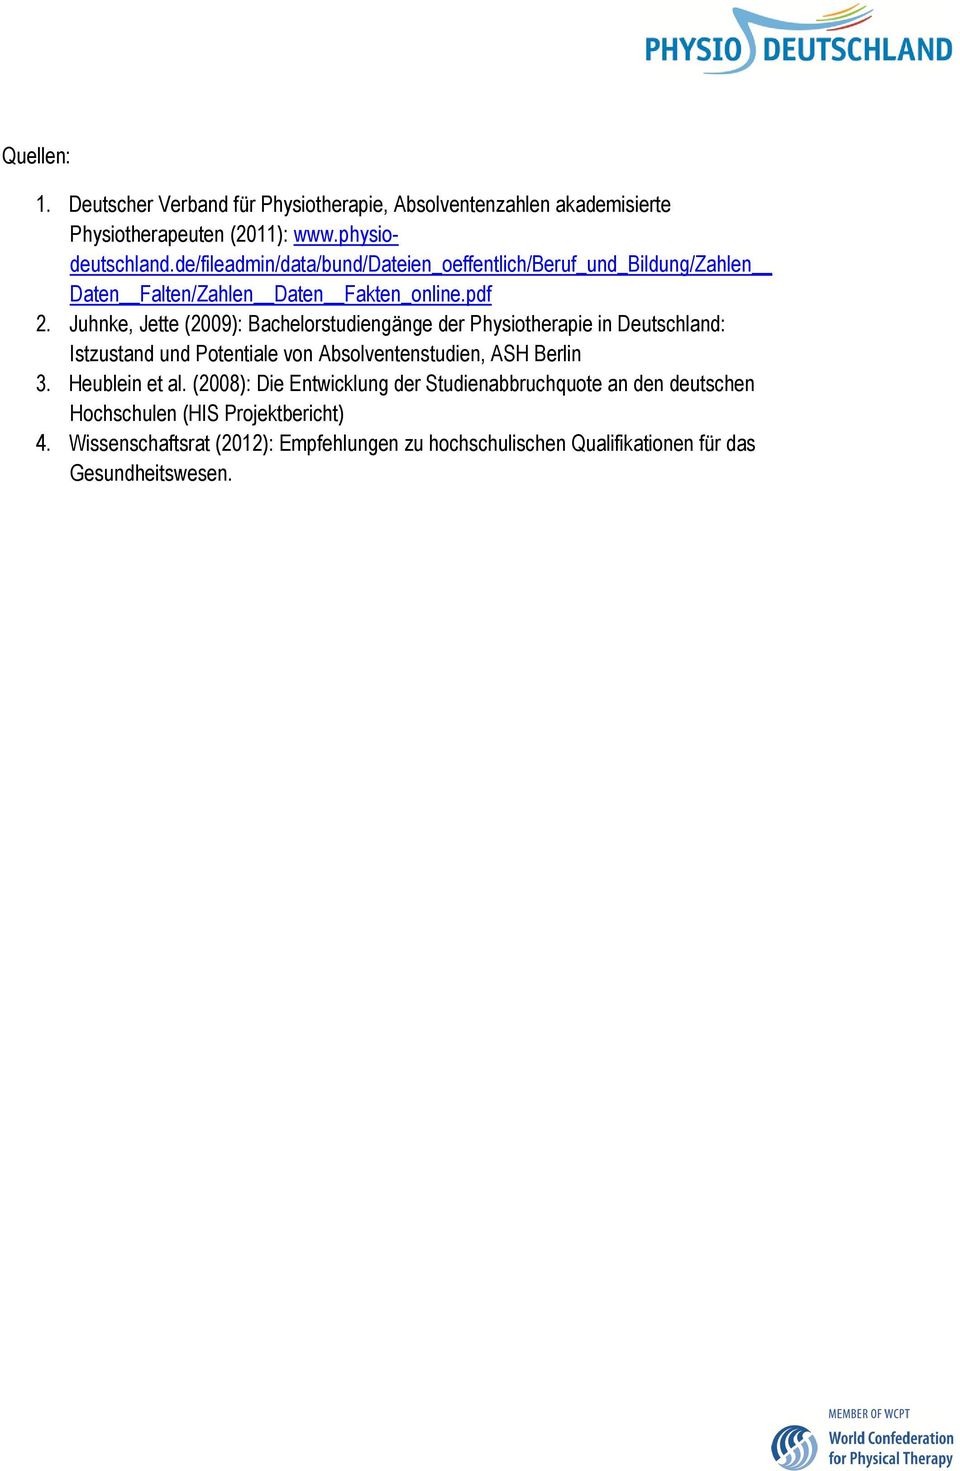 Juhnke, Jette (2009): Bachelorstudiengänge der Physiotherapie in Deutschland: Istzustand und Potentiale von Absolventenstudien, ASH Berlin 3.